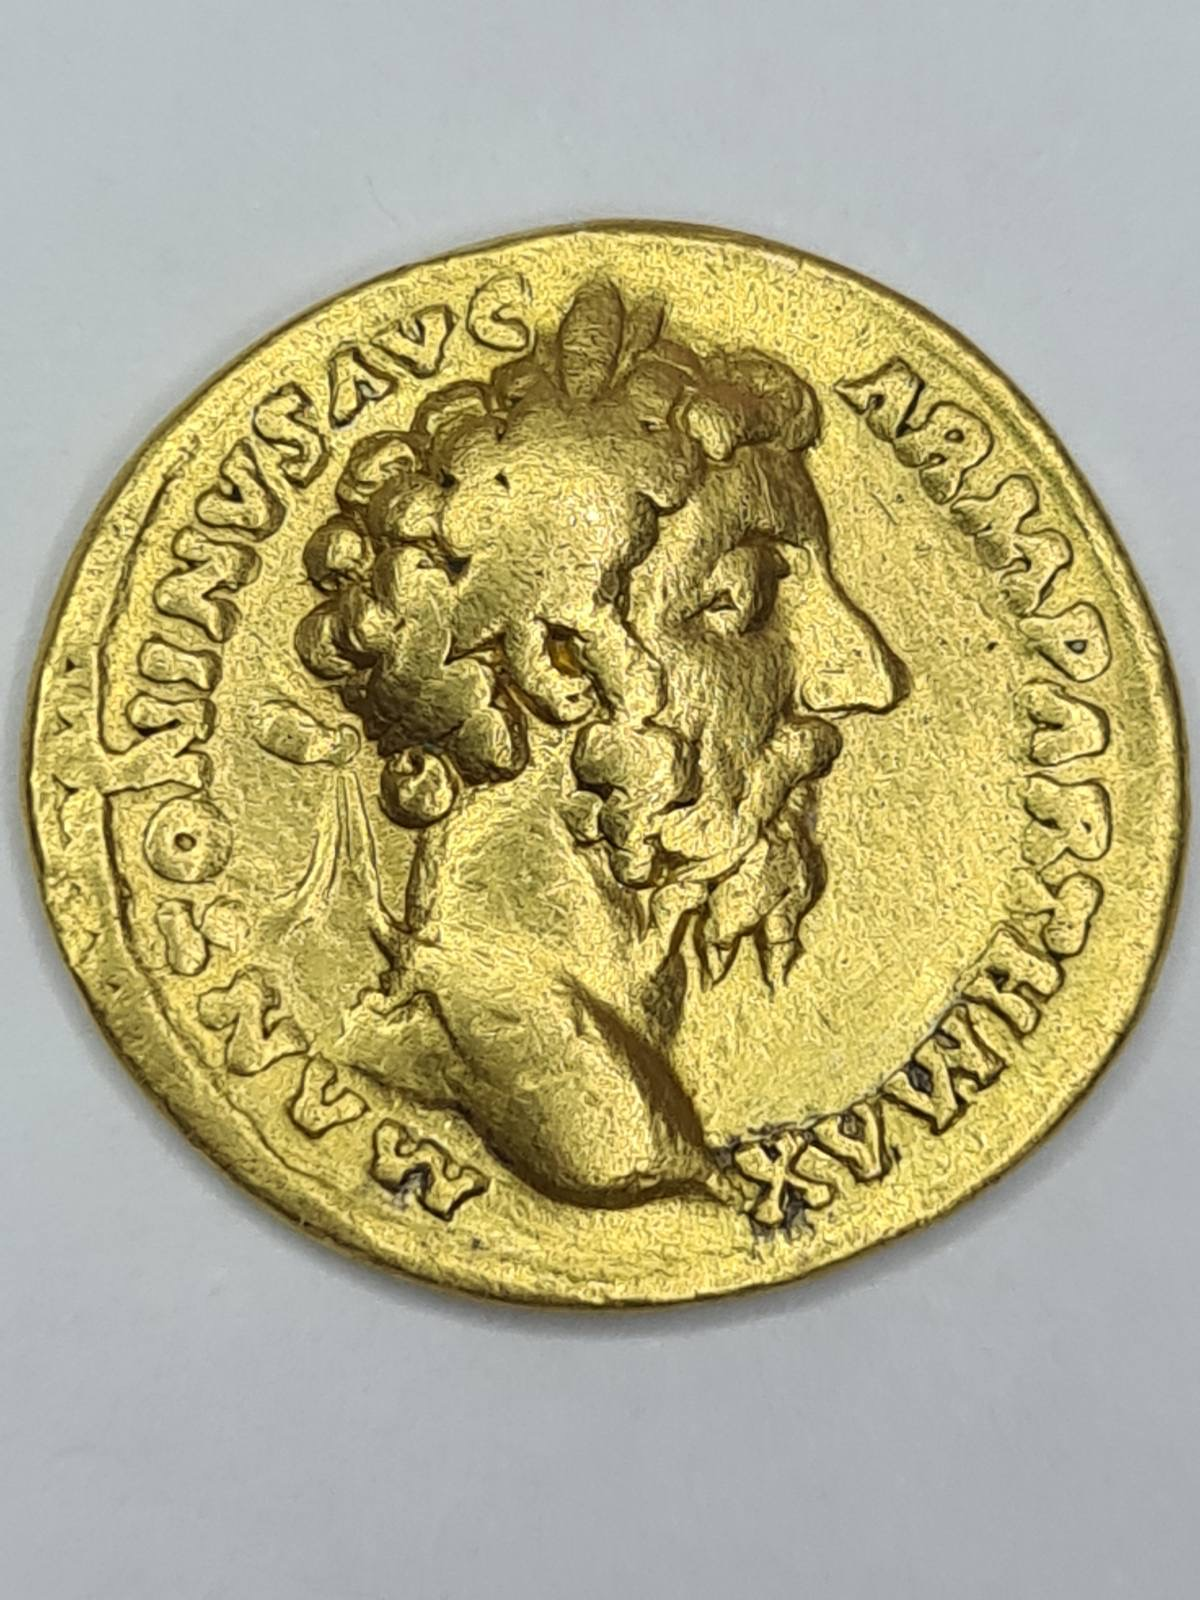 Aureus of Marcus Aurelius, 168